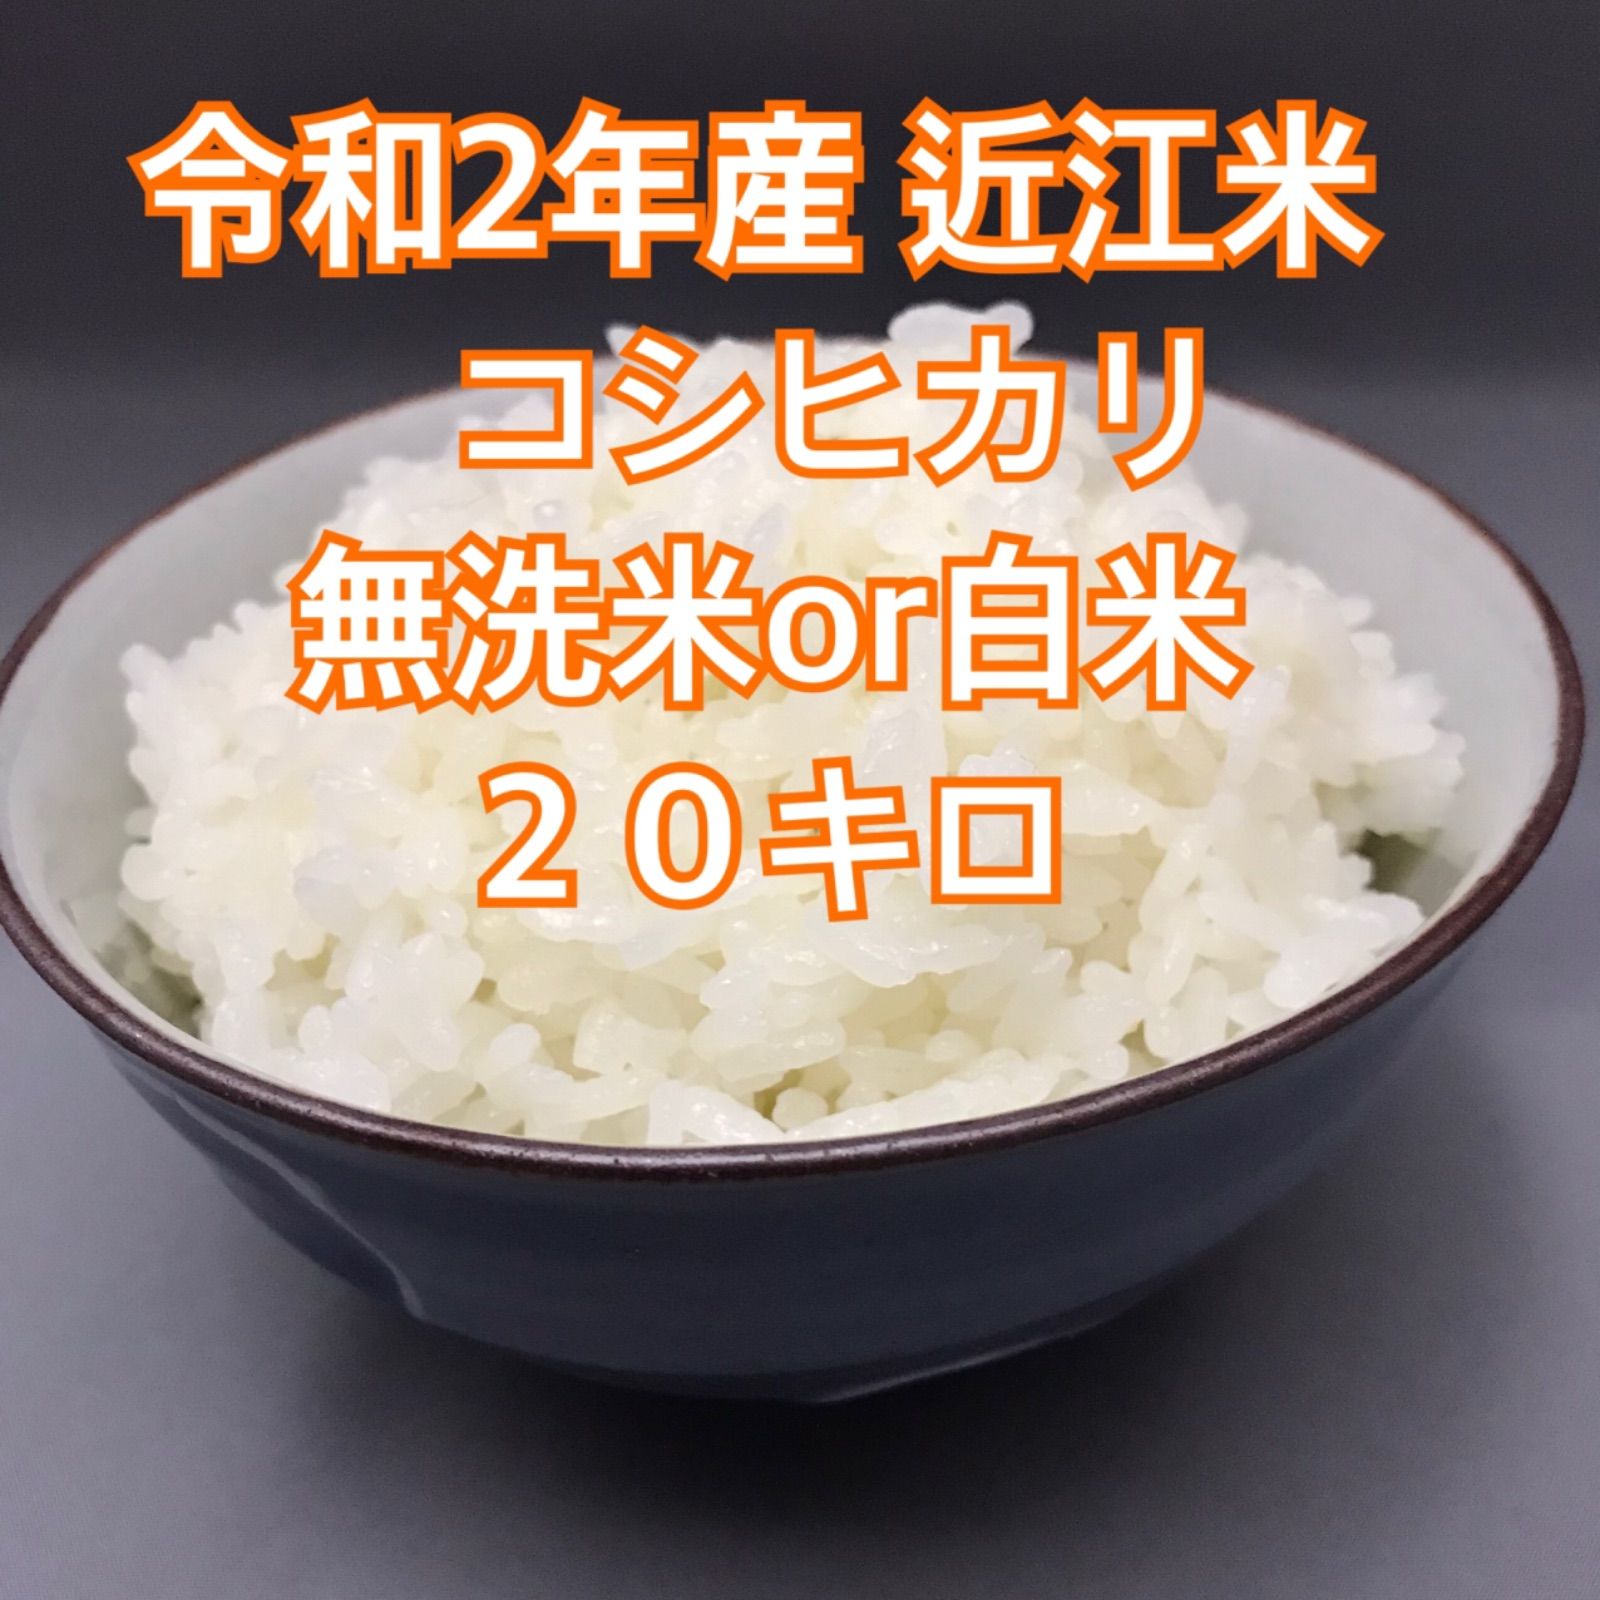 近江米 オリーブ酵素米 コシヒカリ 殺菌殺虫剤散布無し 無洗米 白米